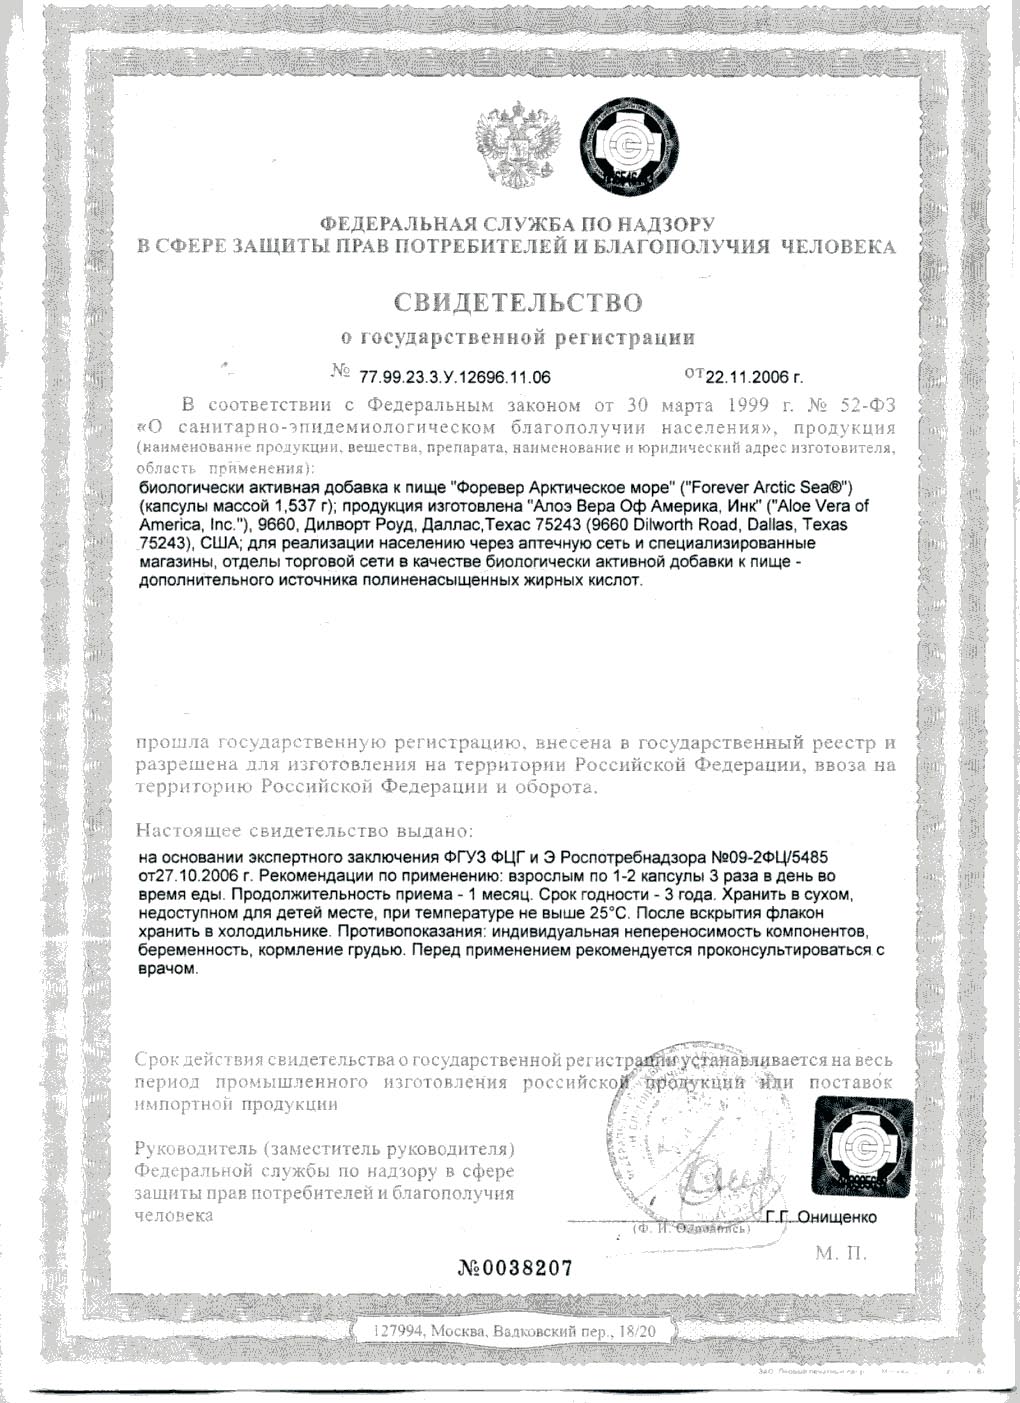 Сертификат Форевер Арктическое Море